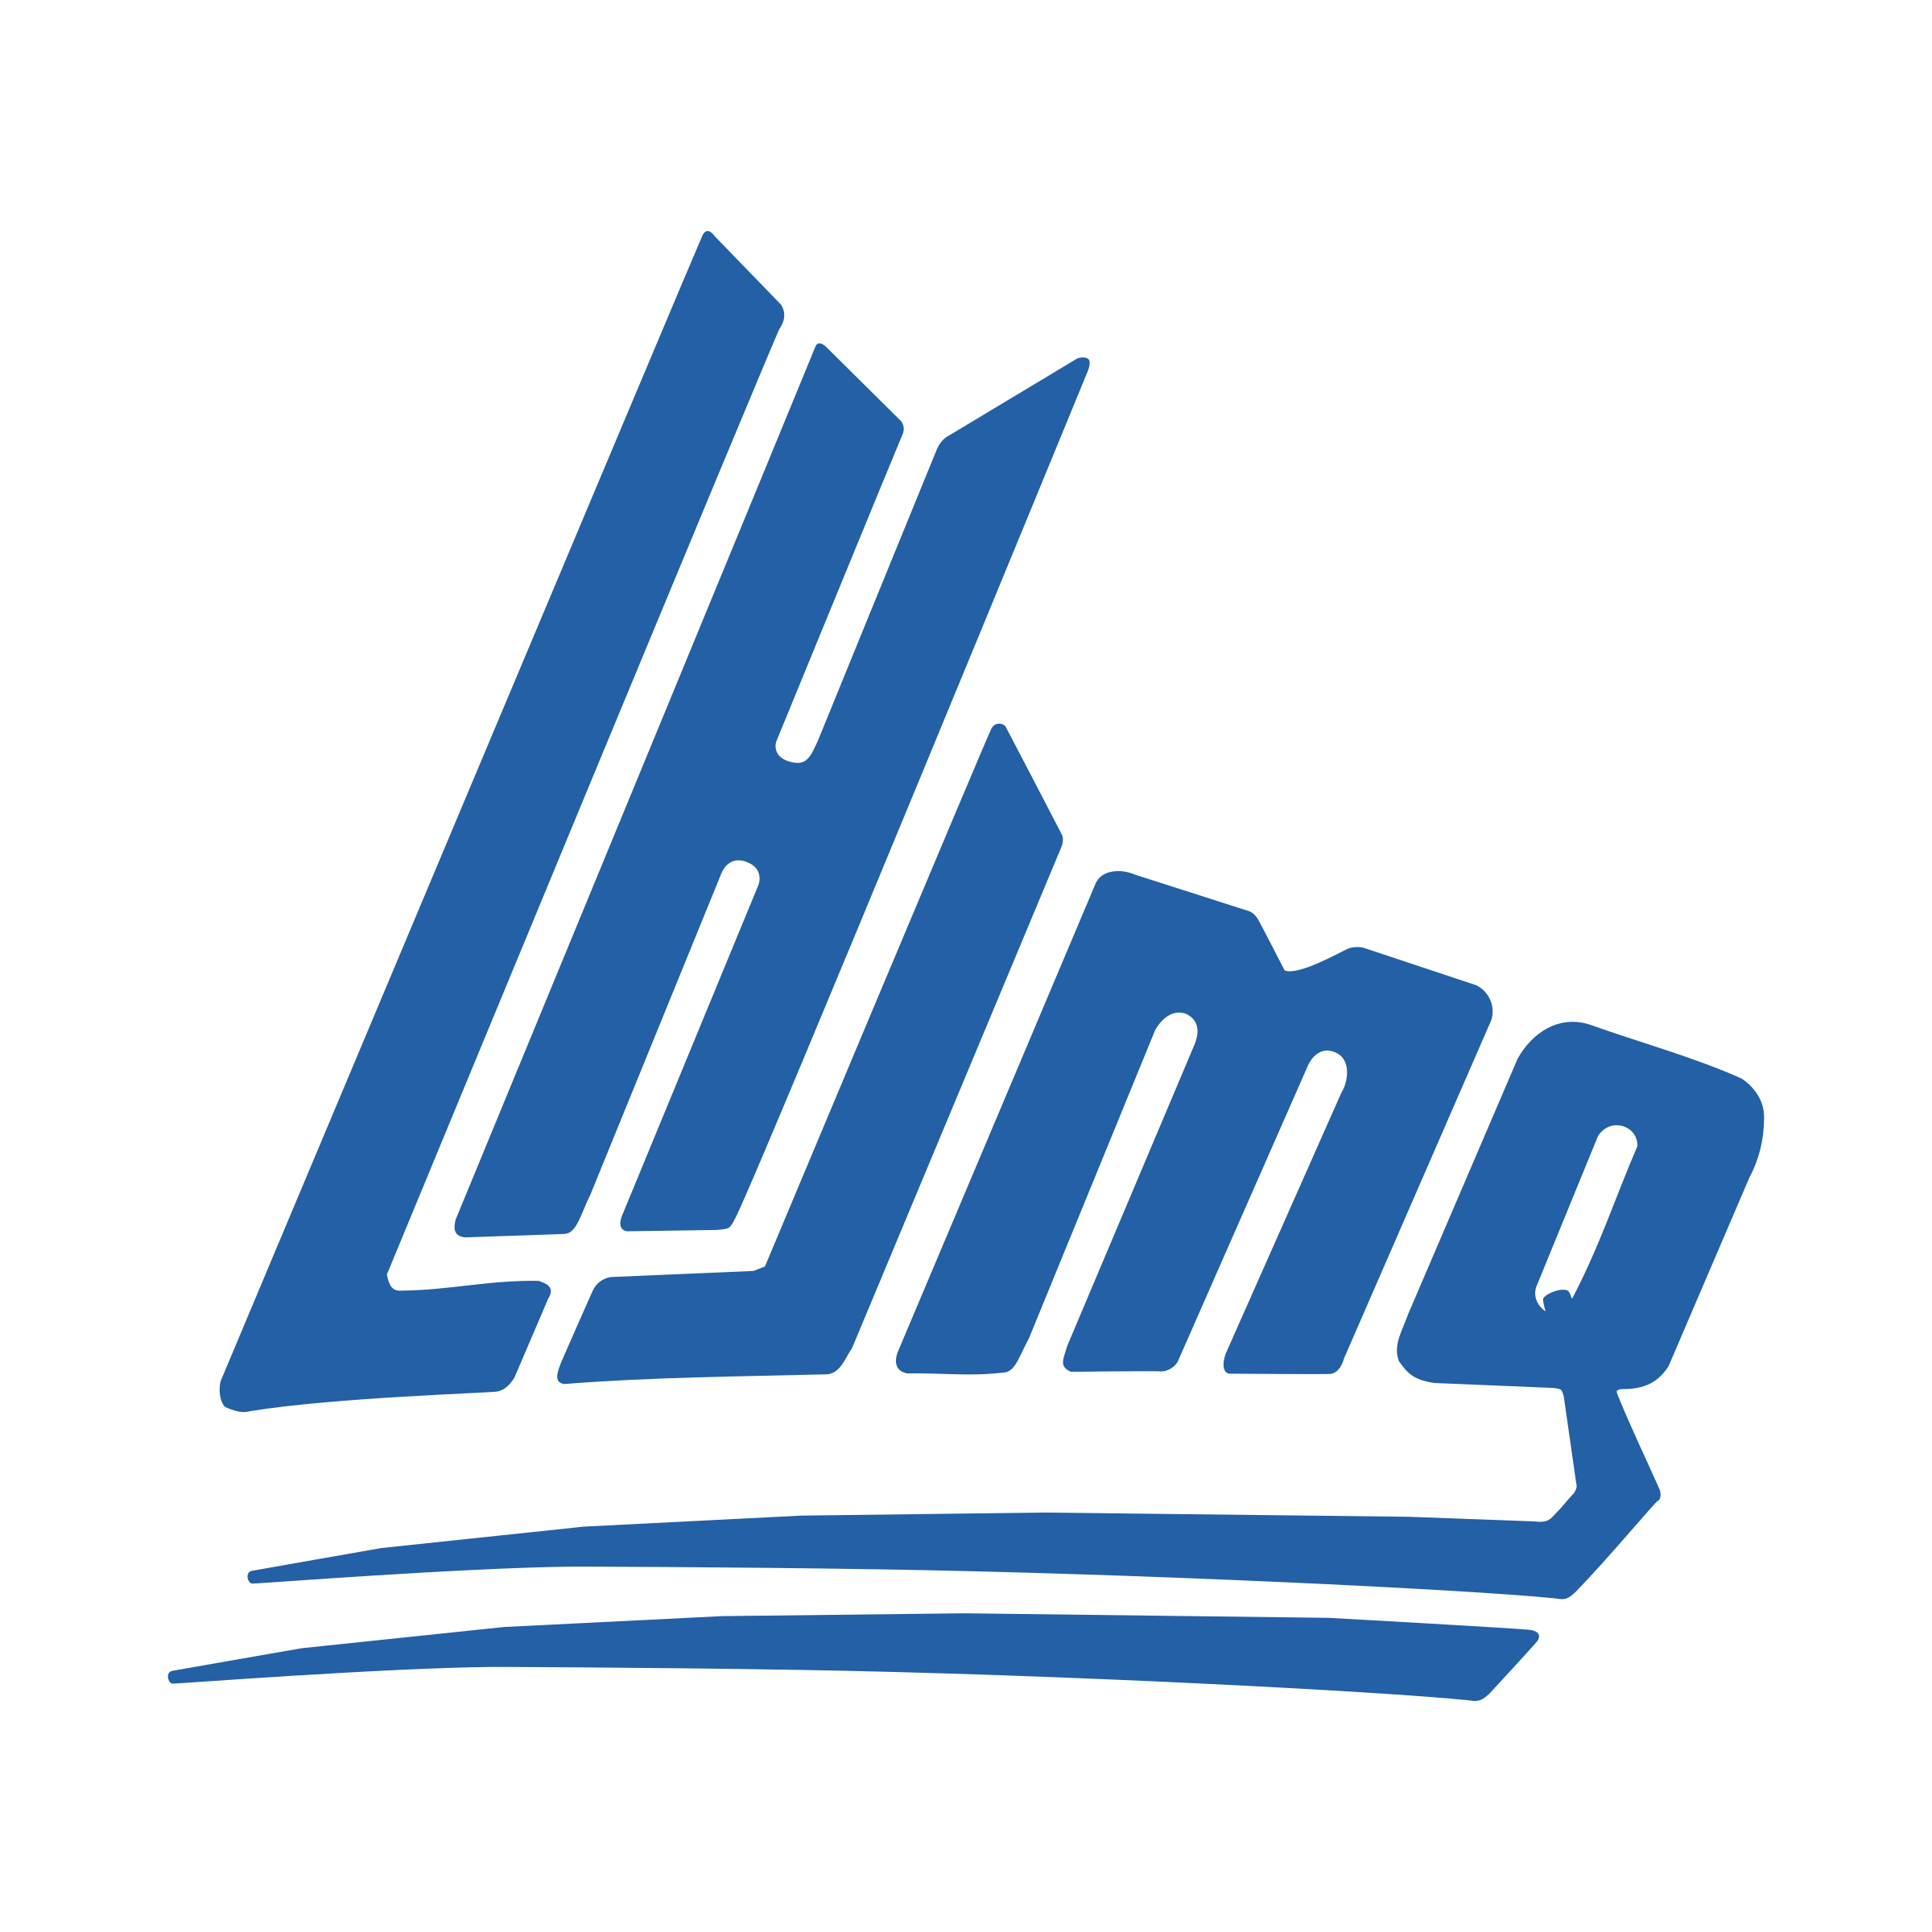 lhjmq-logo-png-transparent.png